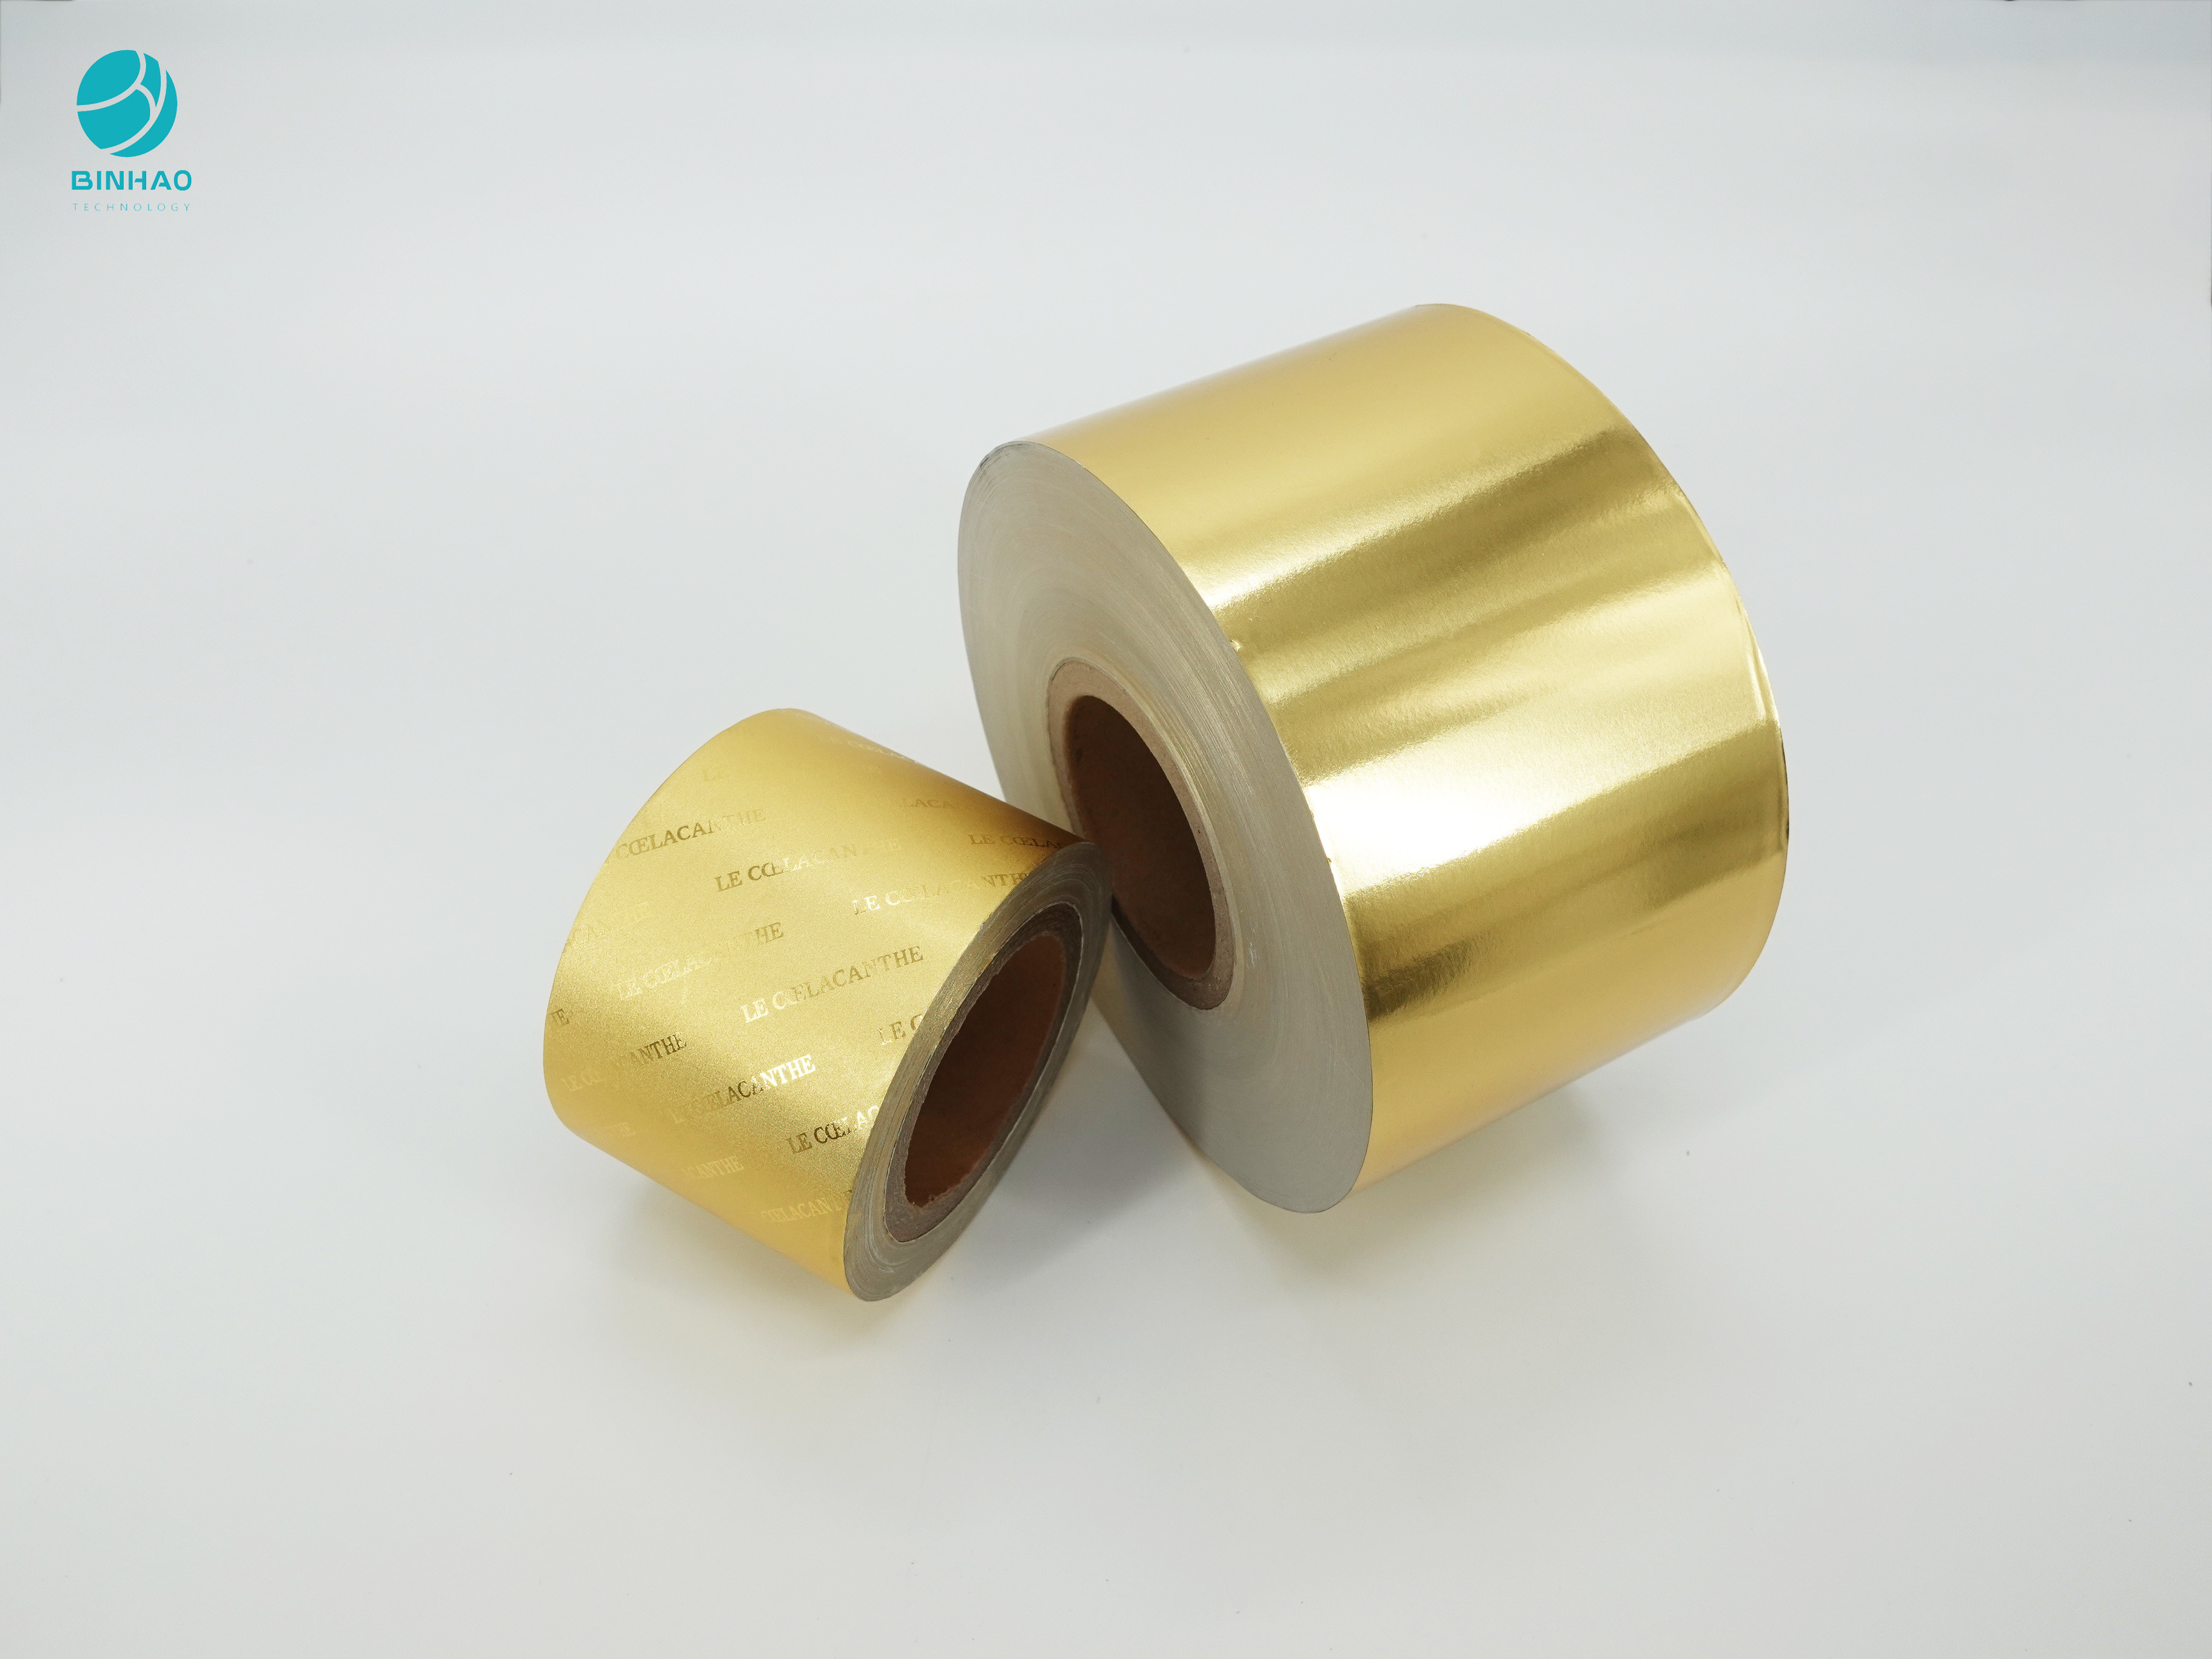 De oro personalizada diseñan el papel de papel de aluminio de 114m m para el embalaje del cigarrillo